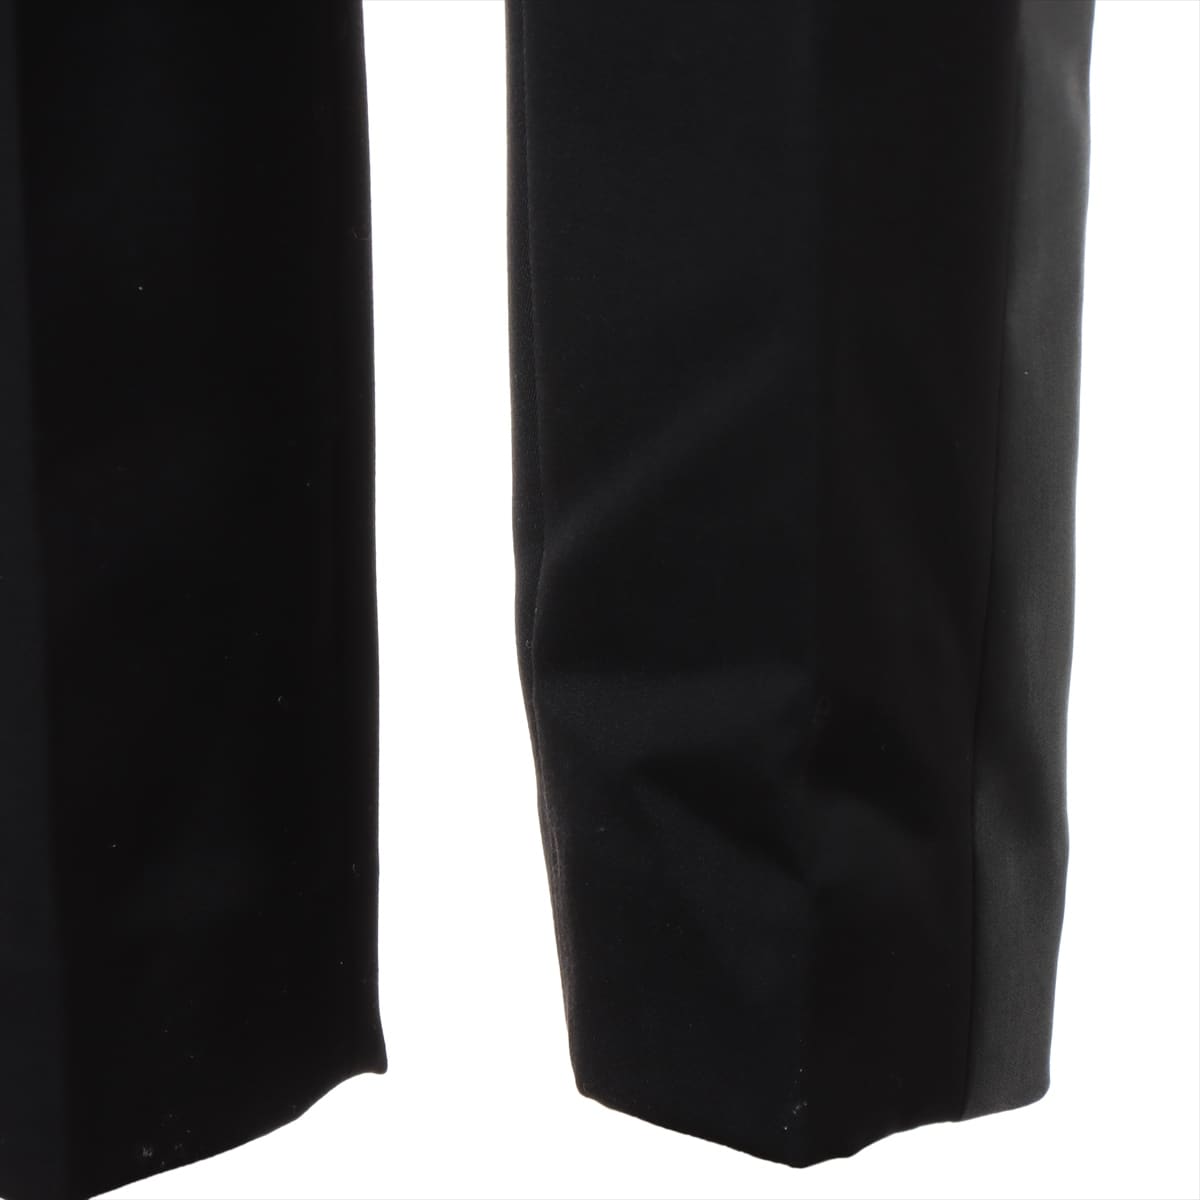 Louis Vuitton 21AW wool x rayon Slacks 34 Black  tuxedo cigarette pants leather strap RW212B 1A9B48